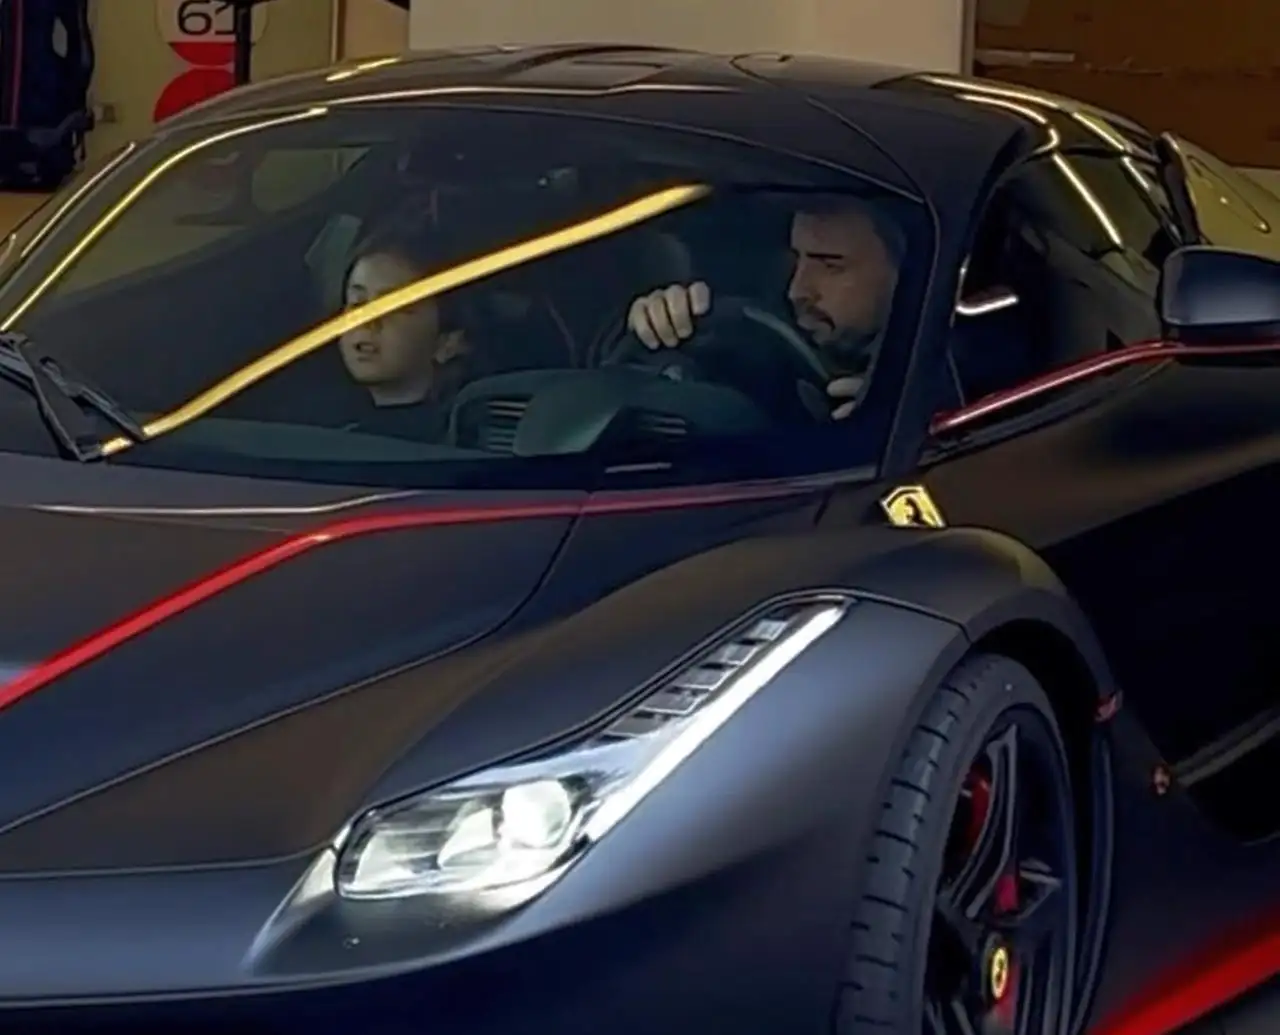 Fernando Alonso spotted driving his LaFerrari in Monaco